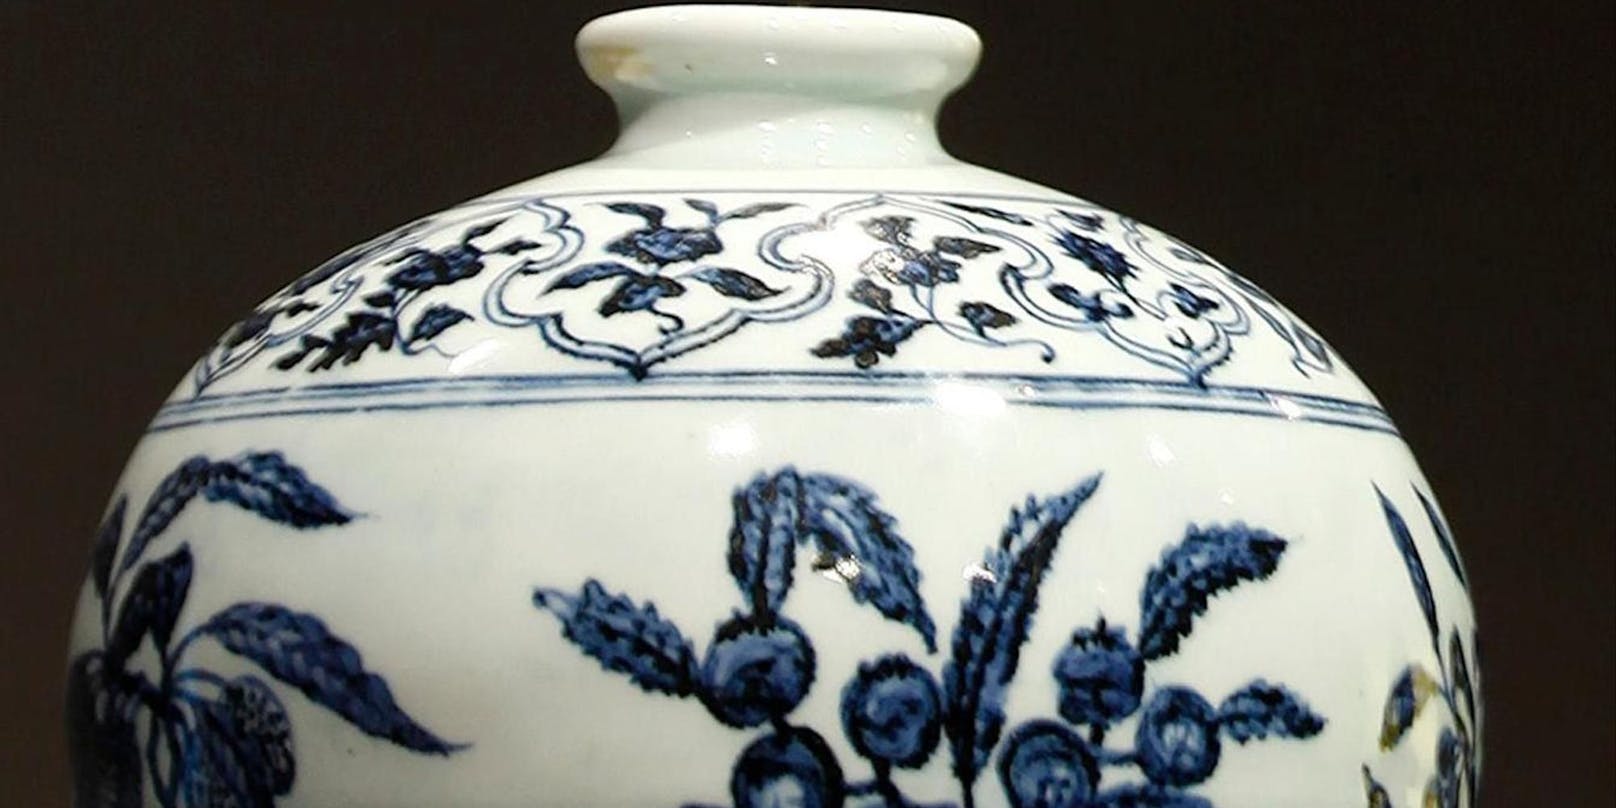 Die Entlassene wehrte sich vor dem Arbeitsgericht: Eine Ming Vase stehe für sie für einen schönen und wertvollen Gegenstand.